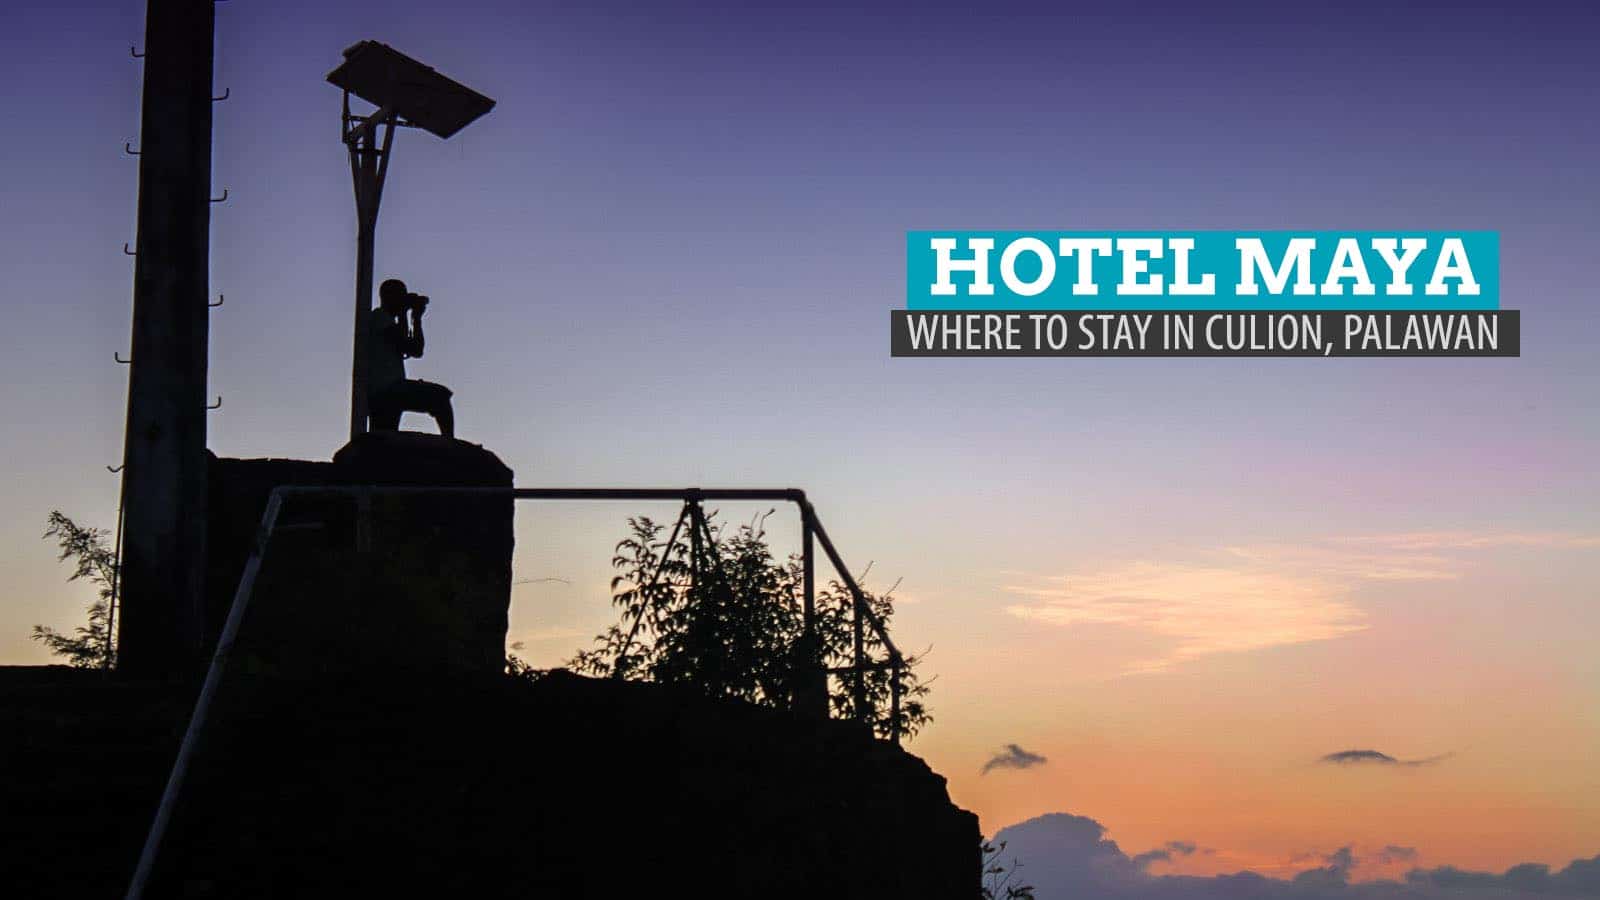 玛雅酒店:菲律宾巴拉望岛Culion的住宿之处